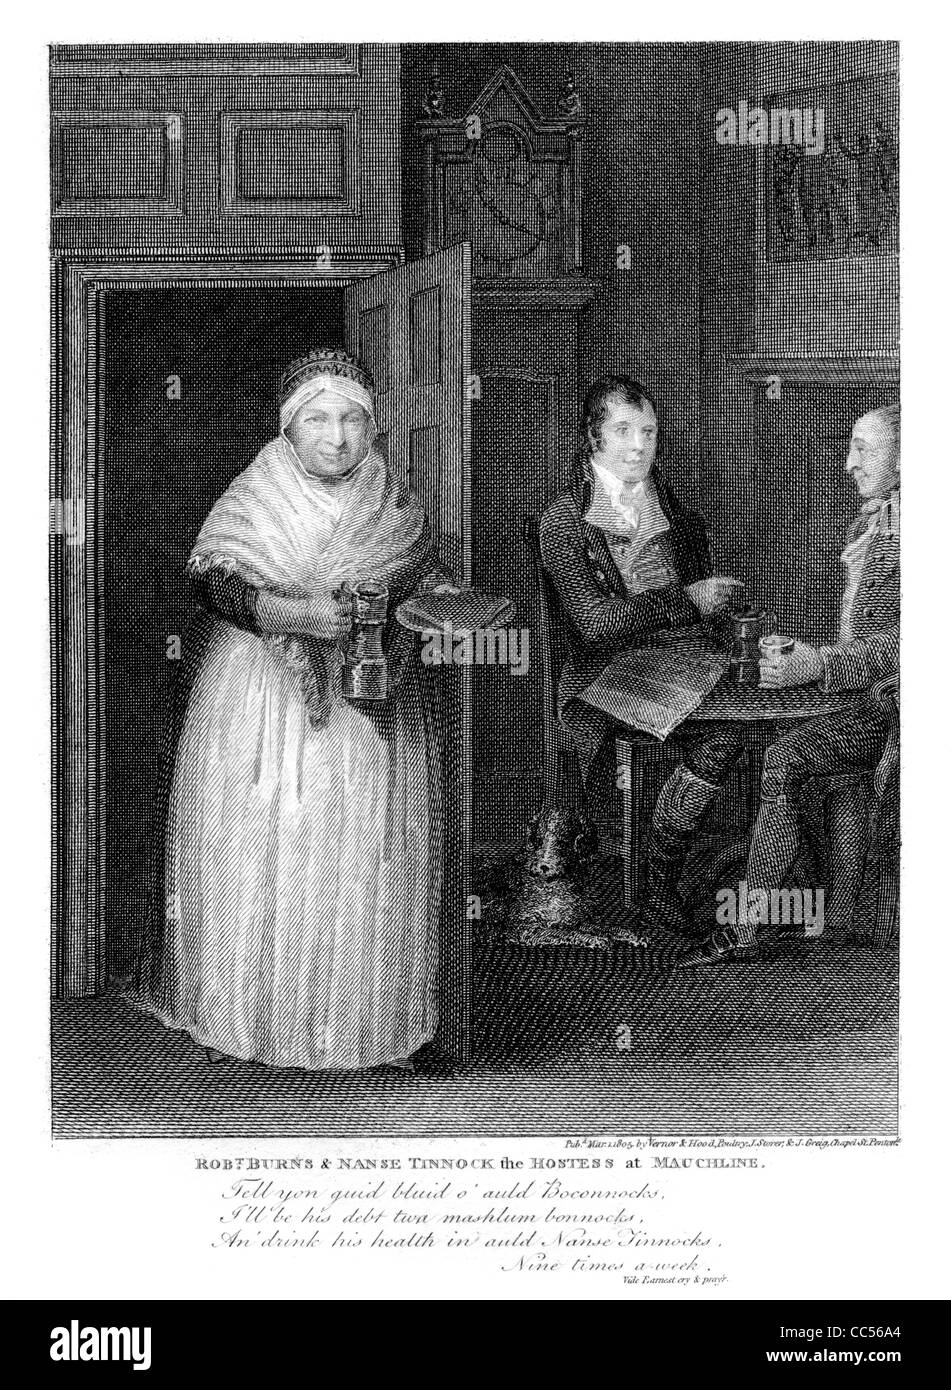 Robt. Burns & Nanse Tinnock la hostess al Mauchline, una incisione da un libro di Robert Burns pubblicato nel 1805. Foto Stock